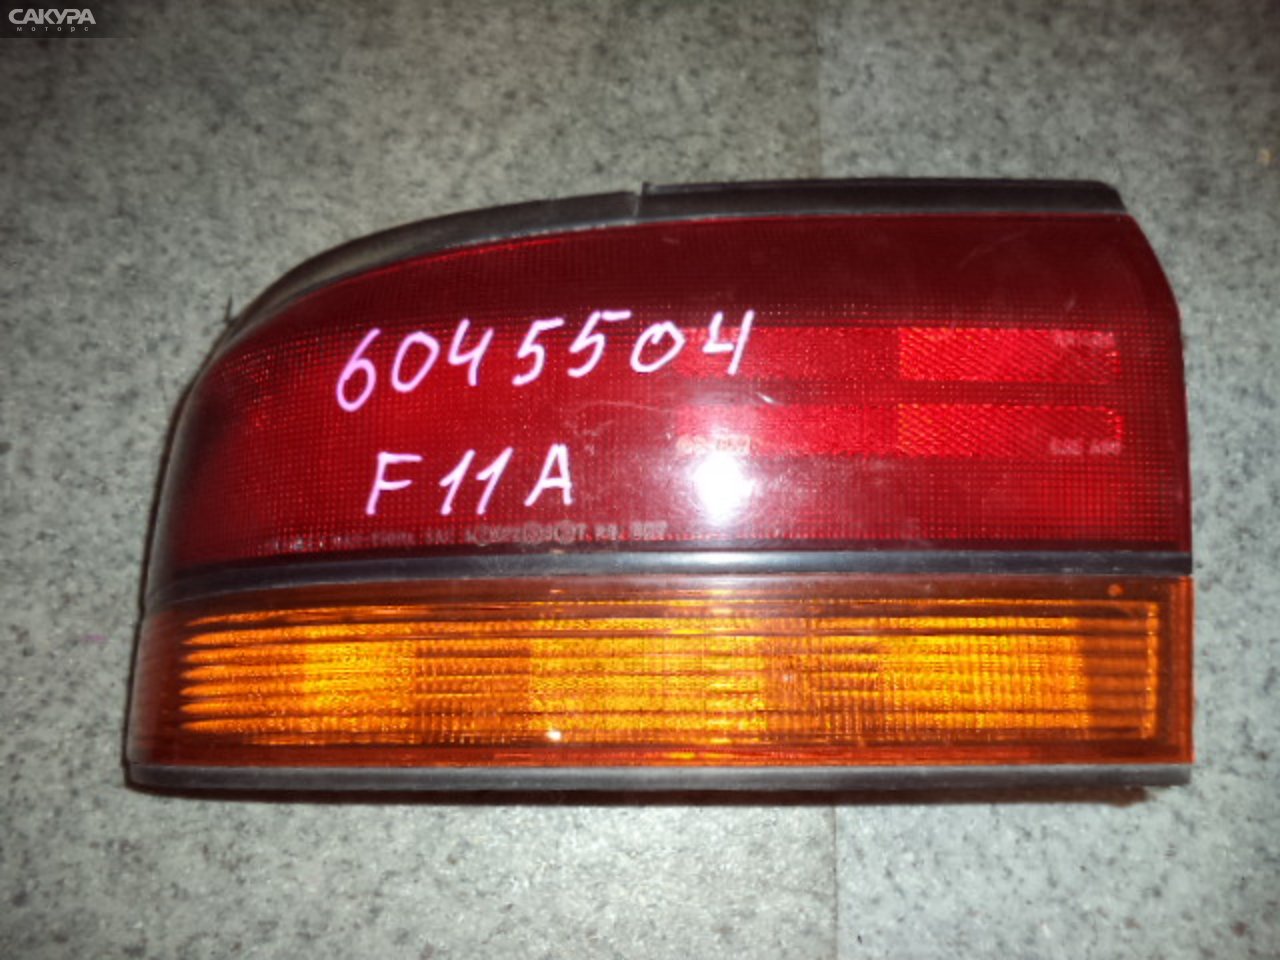 Фонарь стоп-сигнала левый Mitsubishi Diamante F11A 043-1500: купить в Сакура Кемерово.